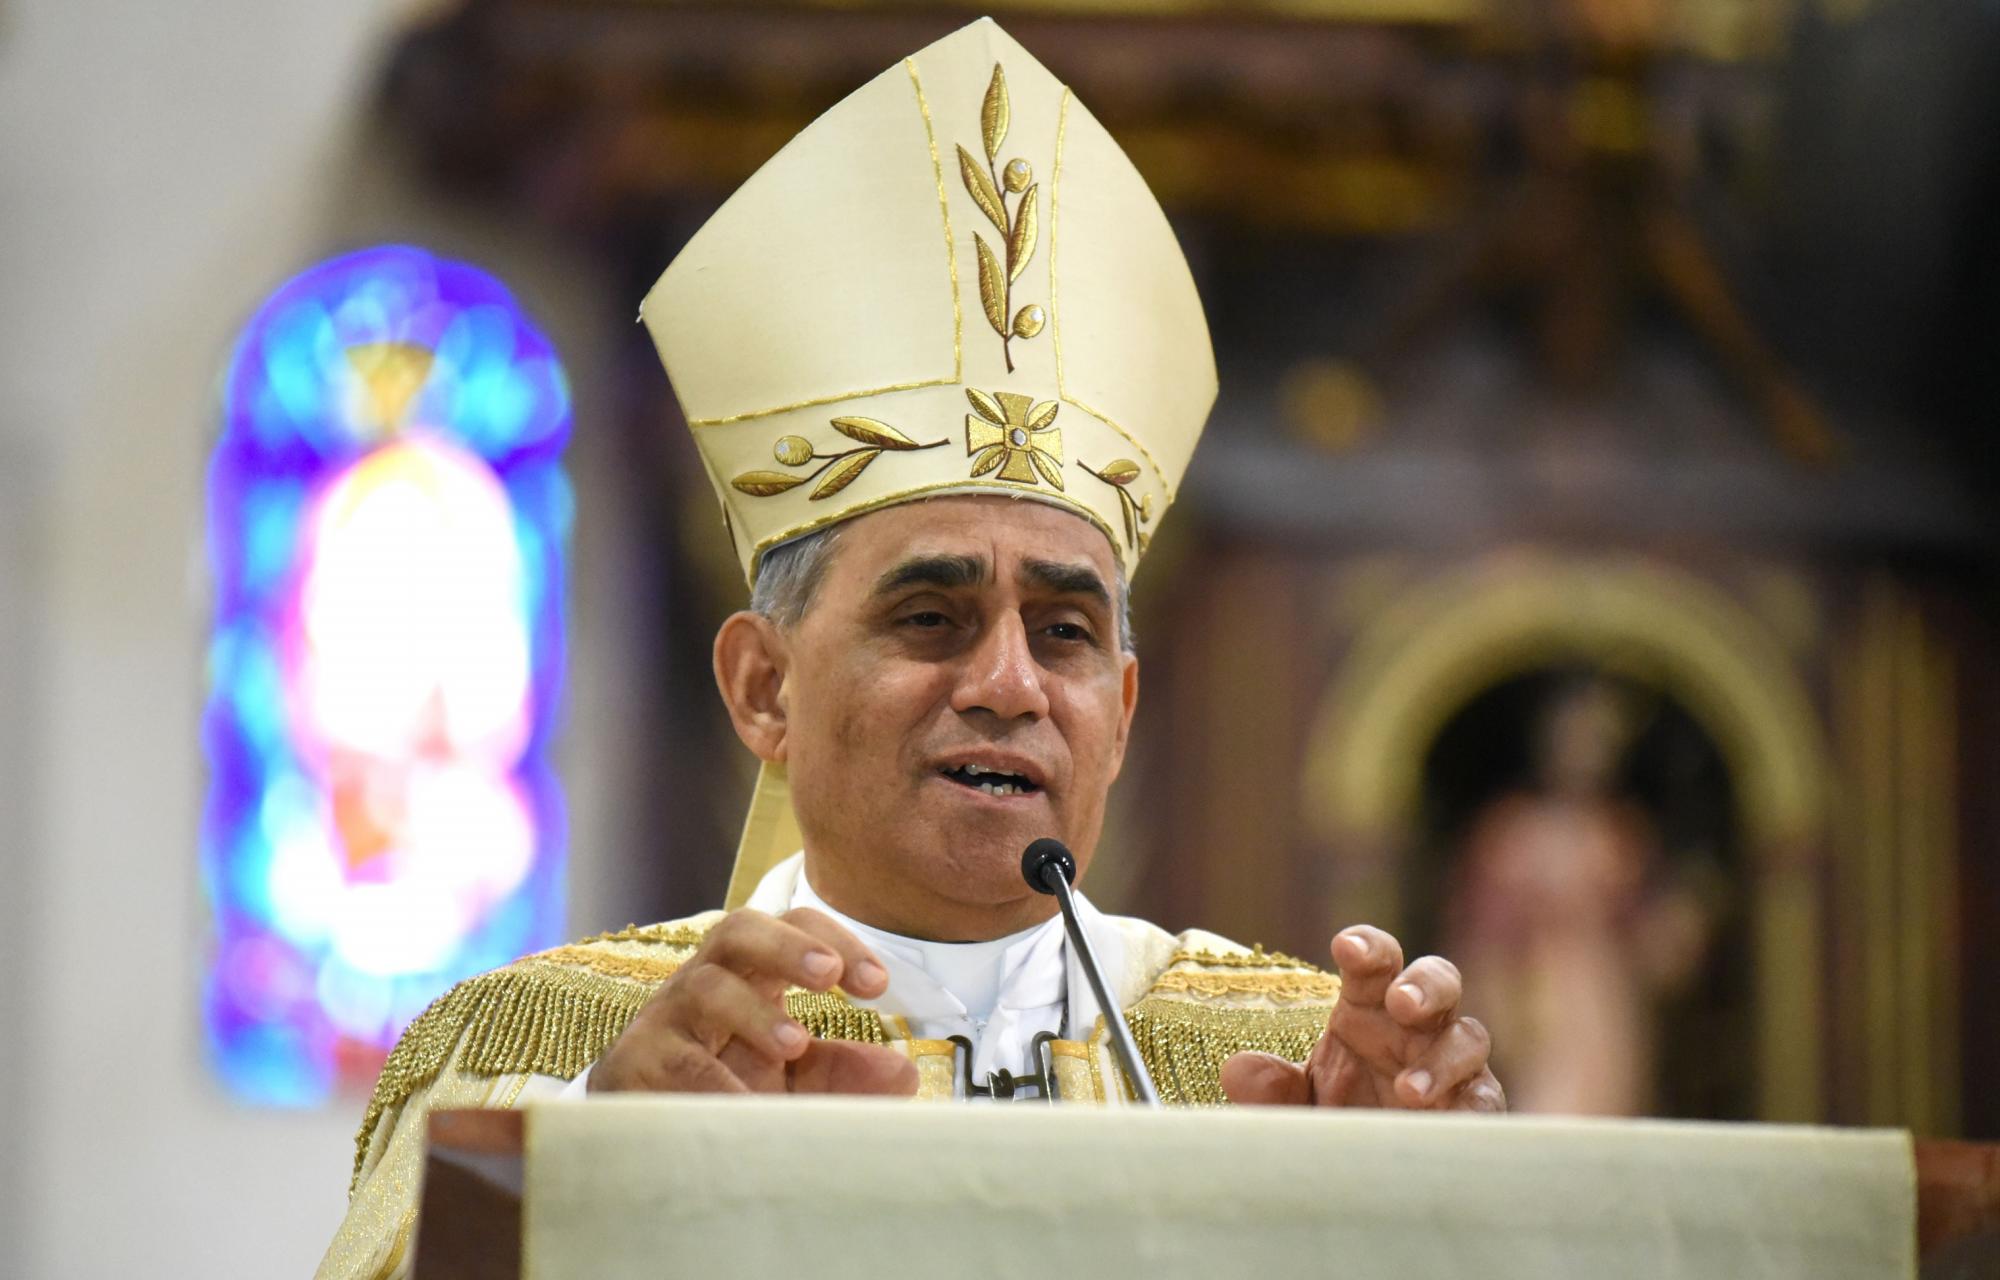 Arzobispo De Santiago Dice Debe Tratarse Bien A Los Inmigrantes Haitianos El Diario Universal 0403